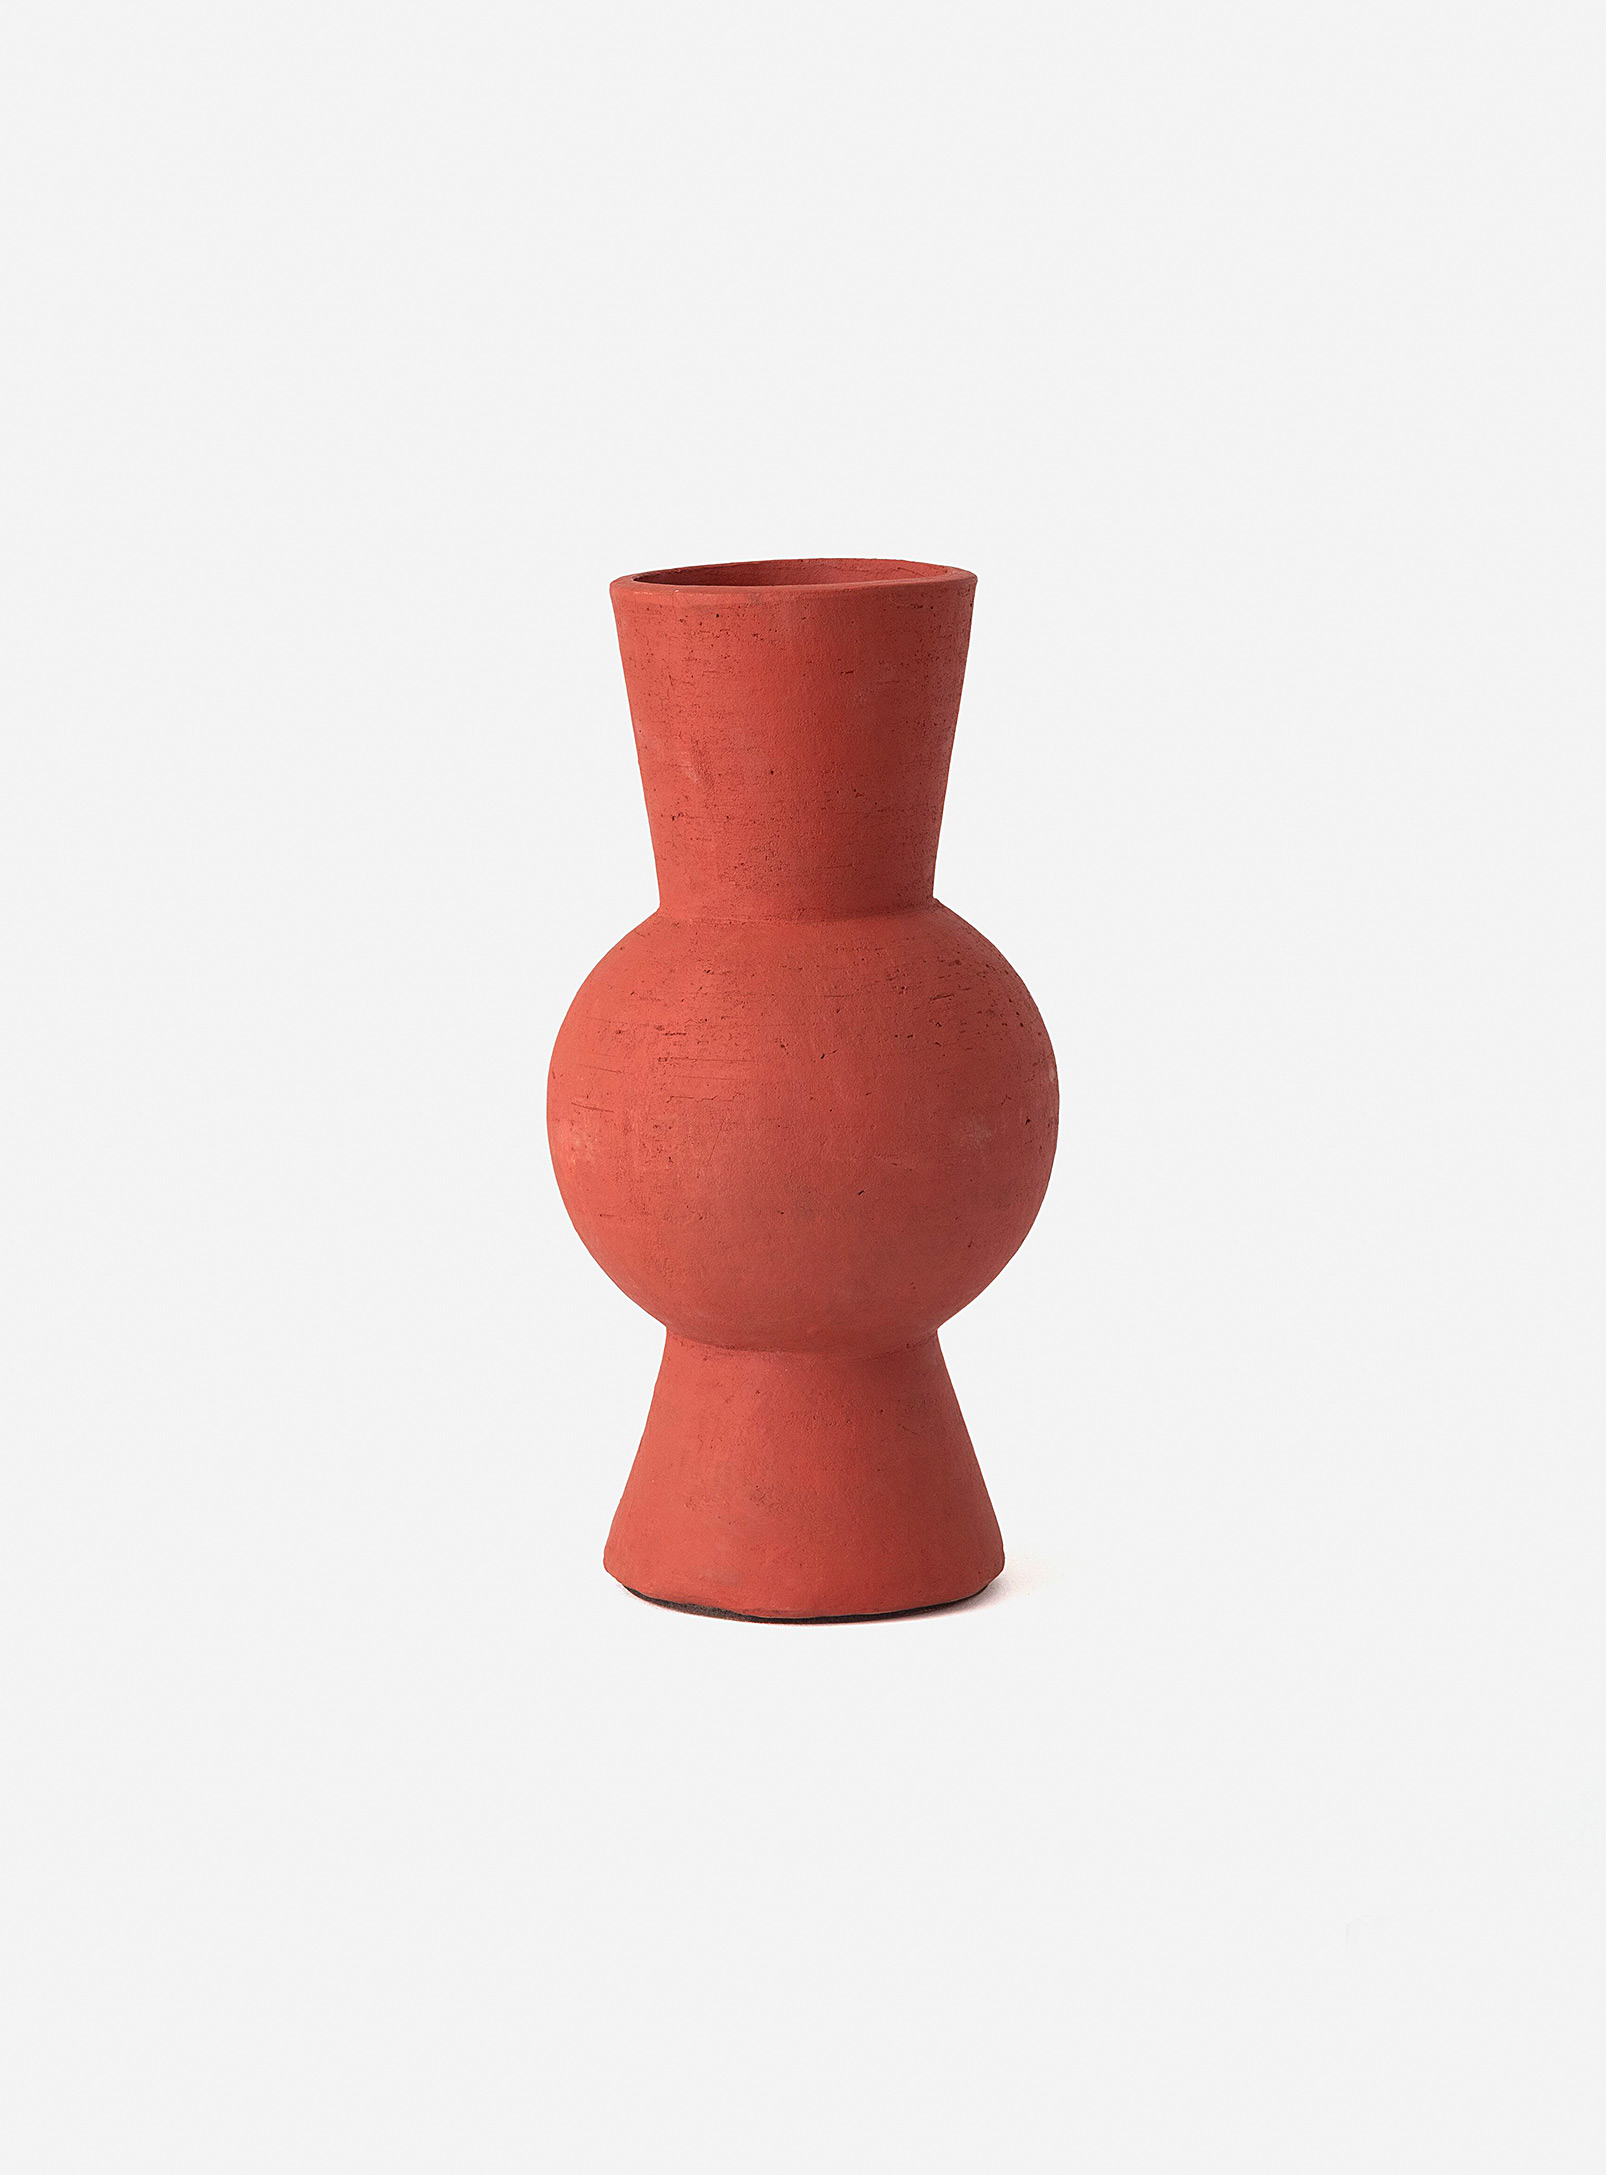 EQ3 - Le vase artisanal géo en terre cuite